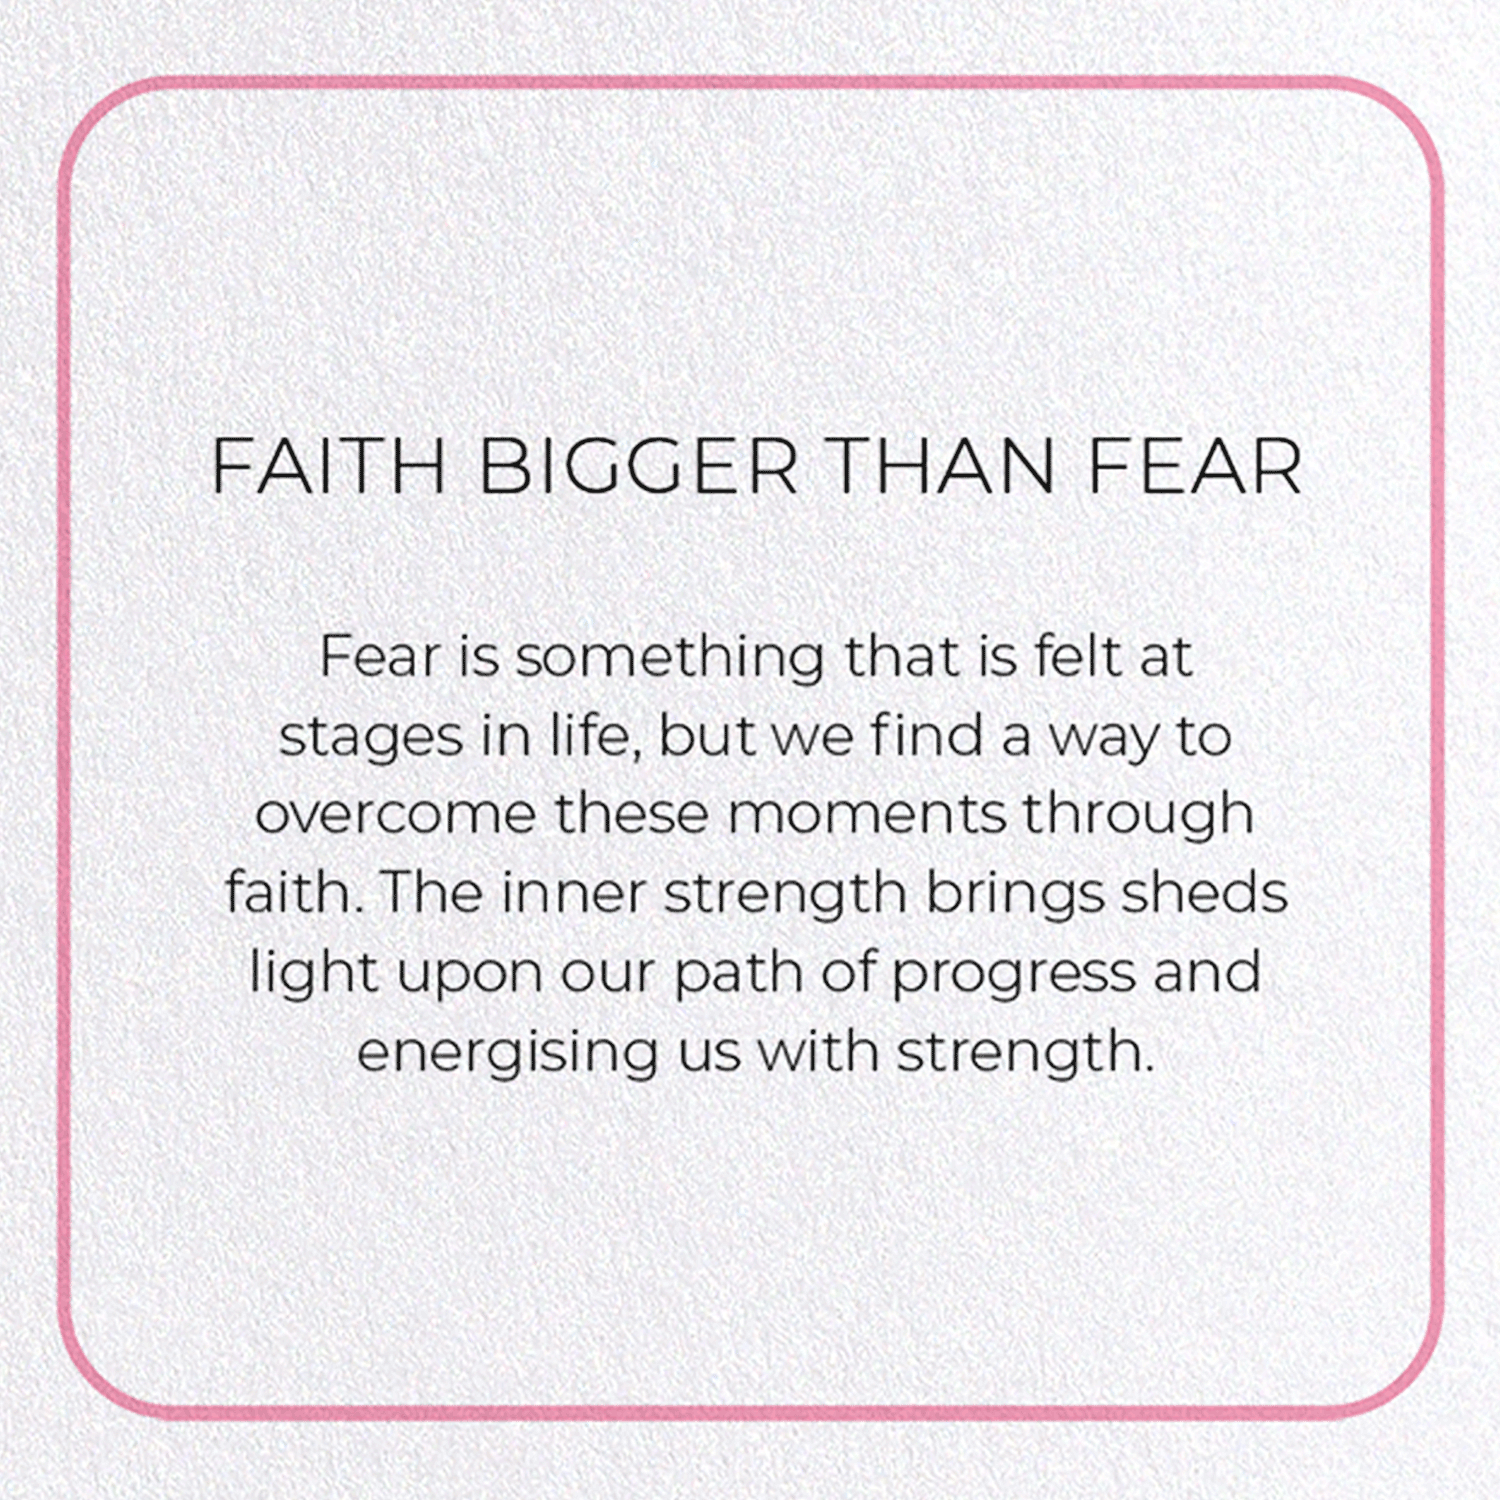 FAITH BIGGER THAN FEAR: Photo Greeting Card